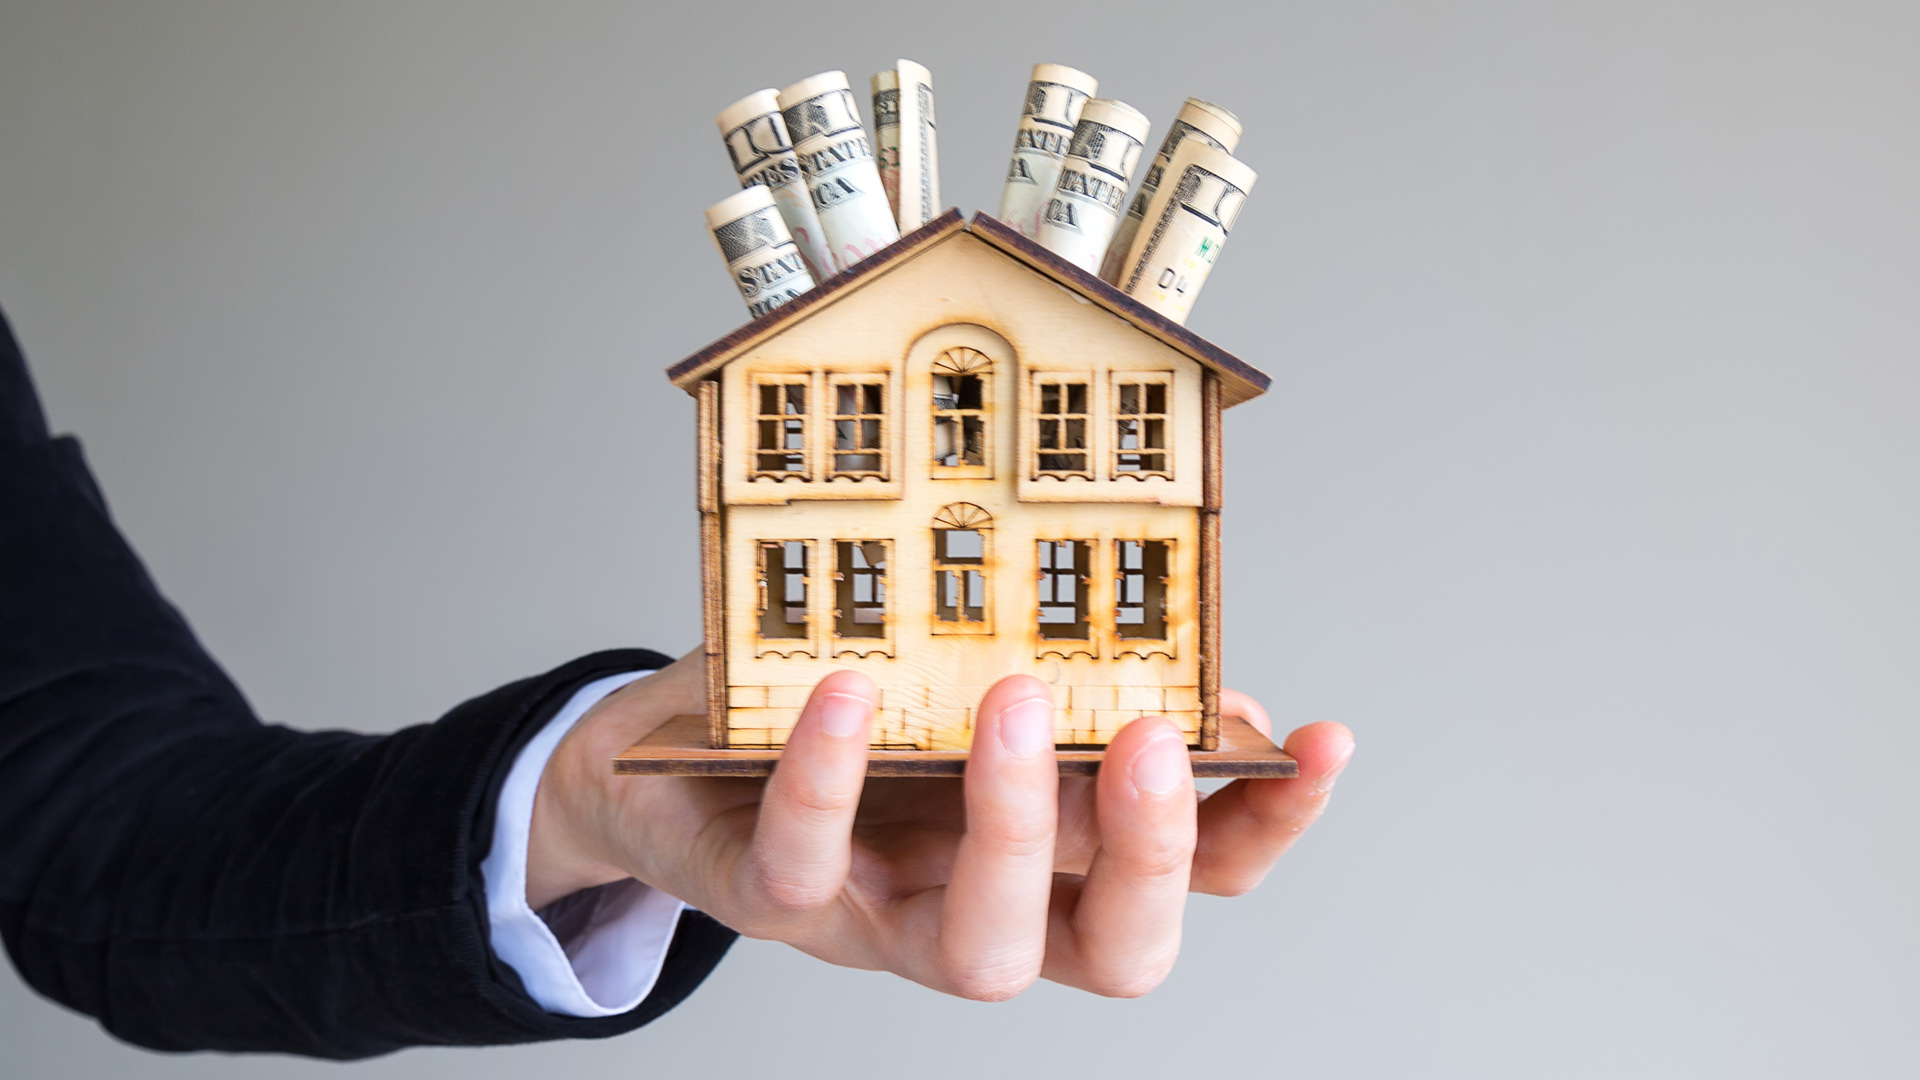 Eur ron investing in real estate alpari forex uk